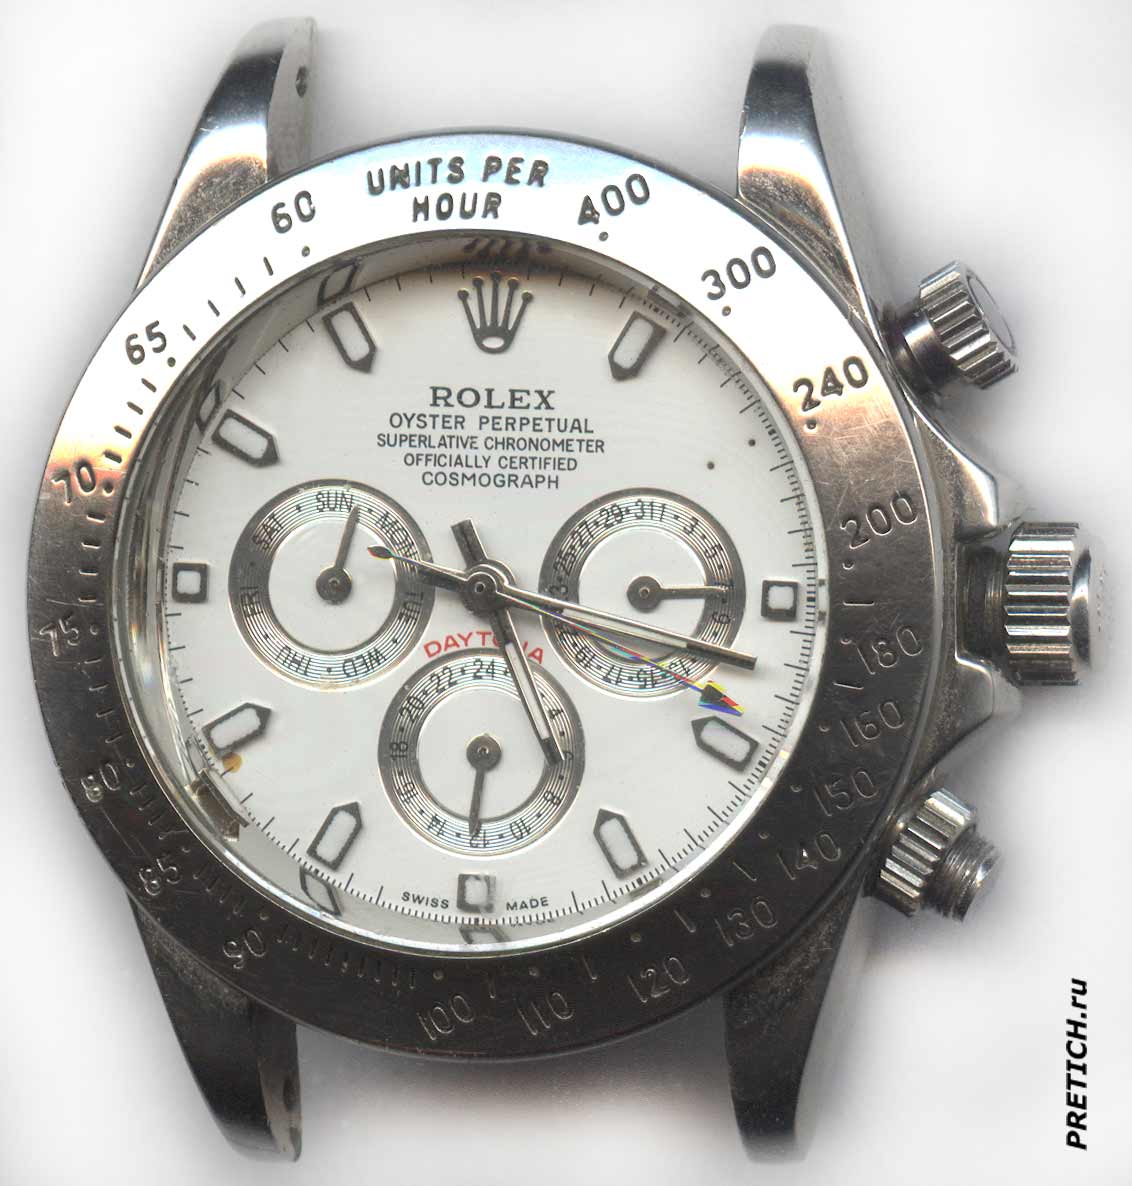 Rolex Daytona обзор механических часов